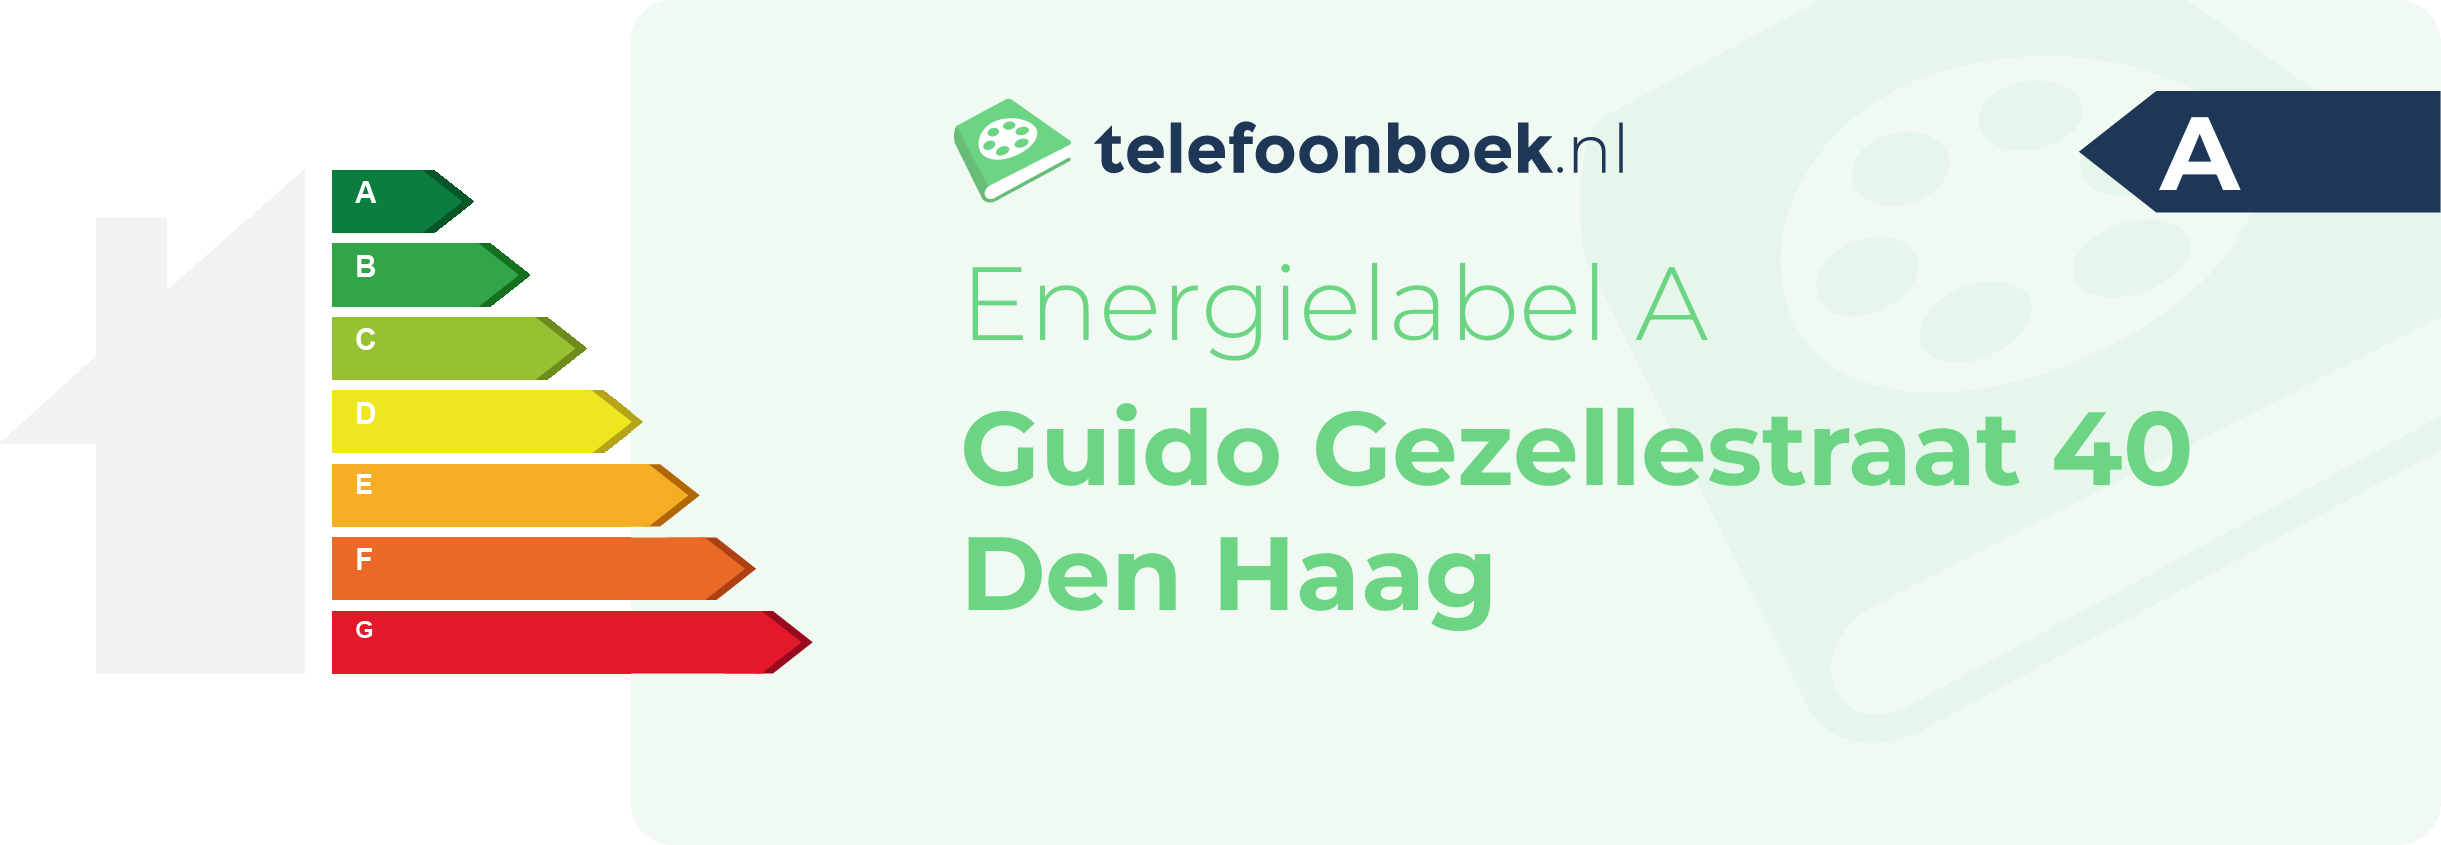 Energielabel Guido Gezellestraat 40 Den Haag